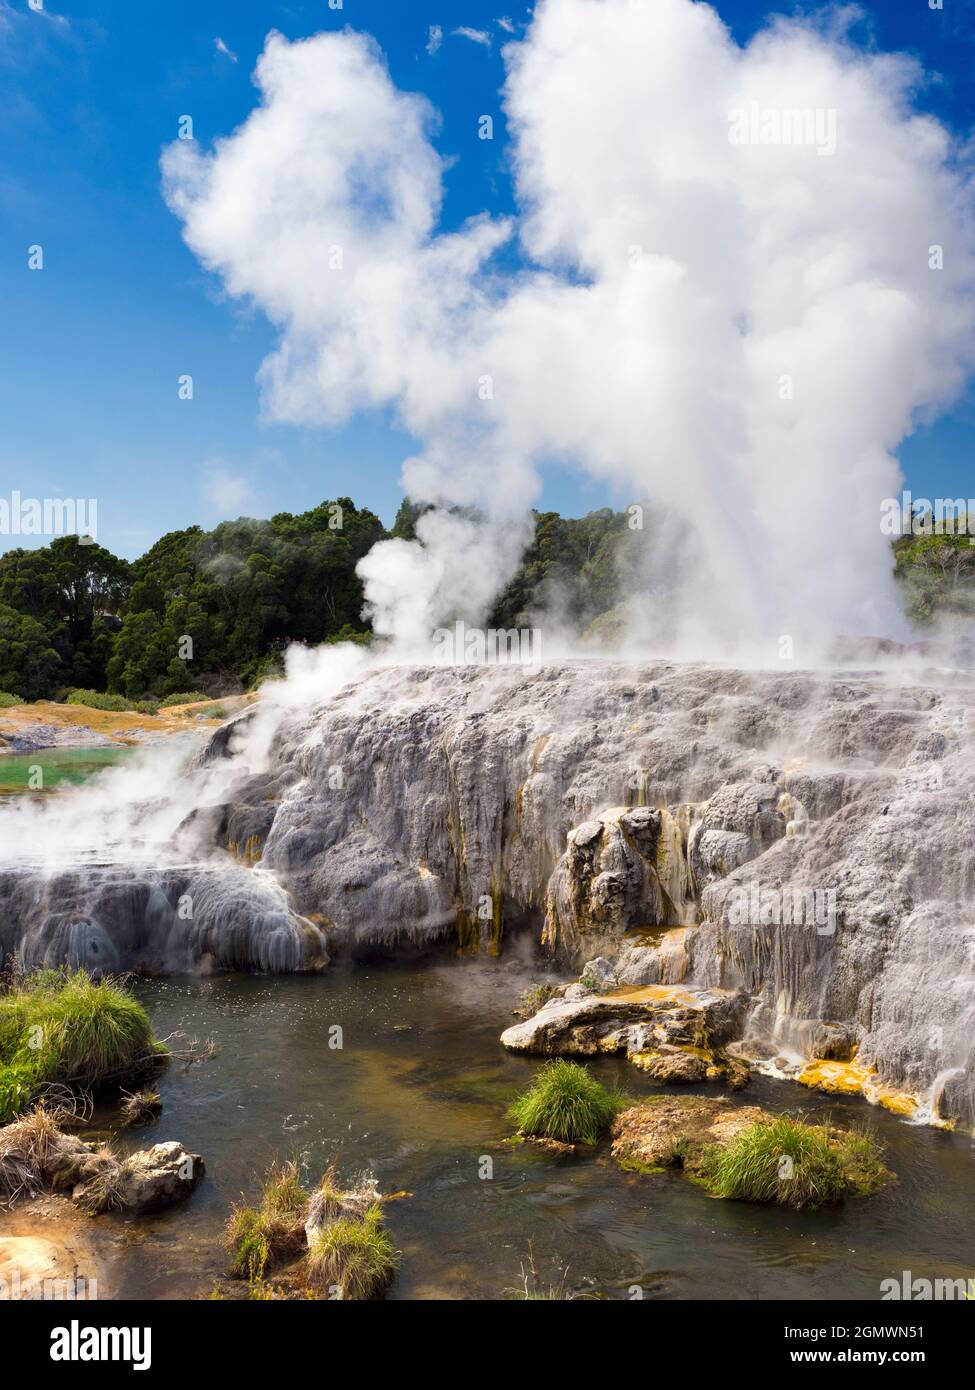 Rotorua, Nuova Zelanda - 1 marzo 2019; Rotorua, nell'Isola del Nord della Nuova Zelanda, è un'area estesa ricca di sfiati geotermici, sorgenti di fango bollente, su Foto Stock